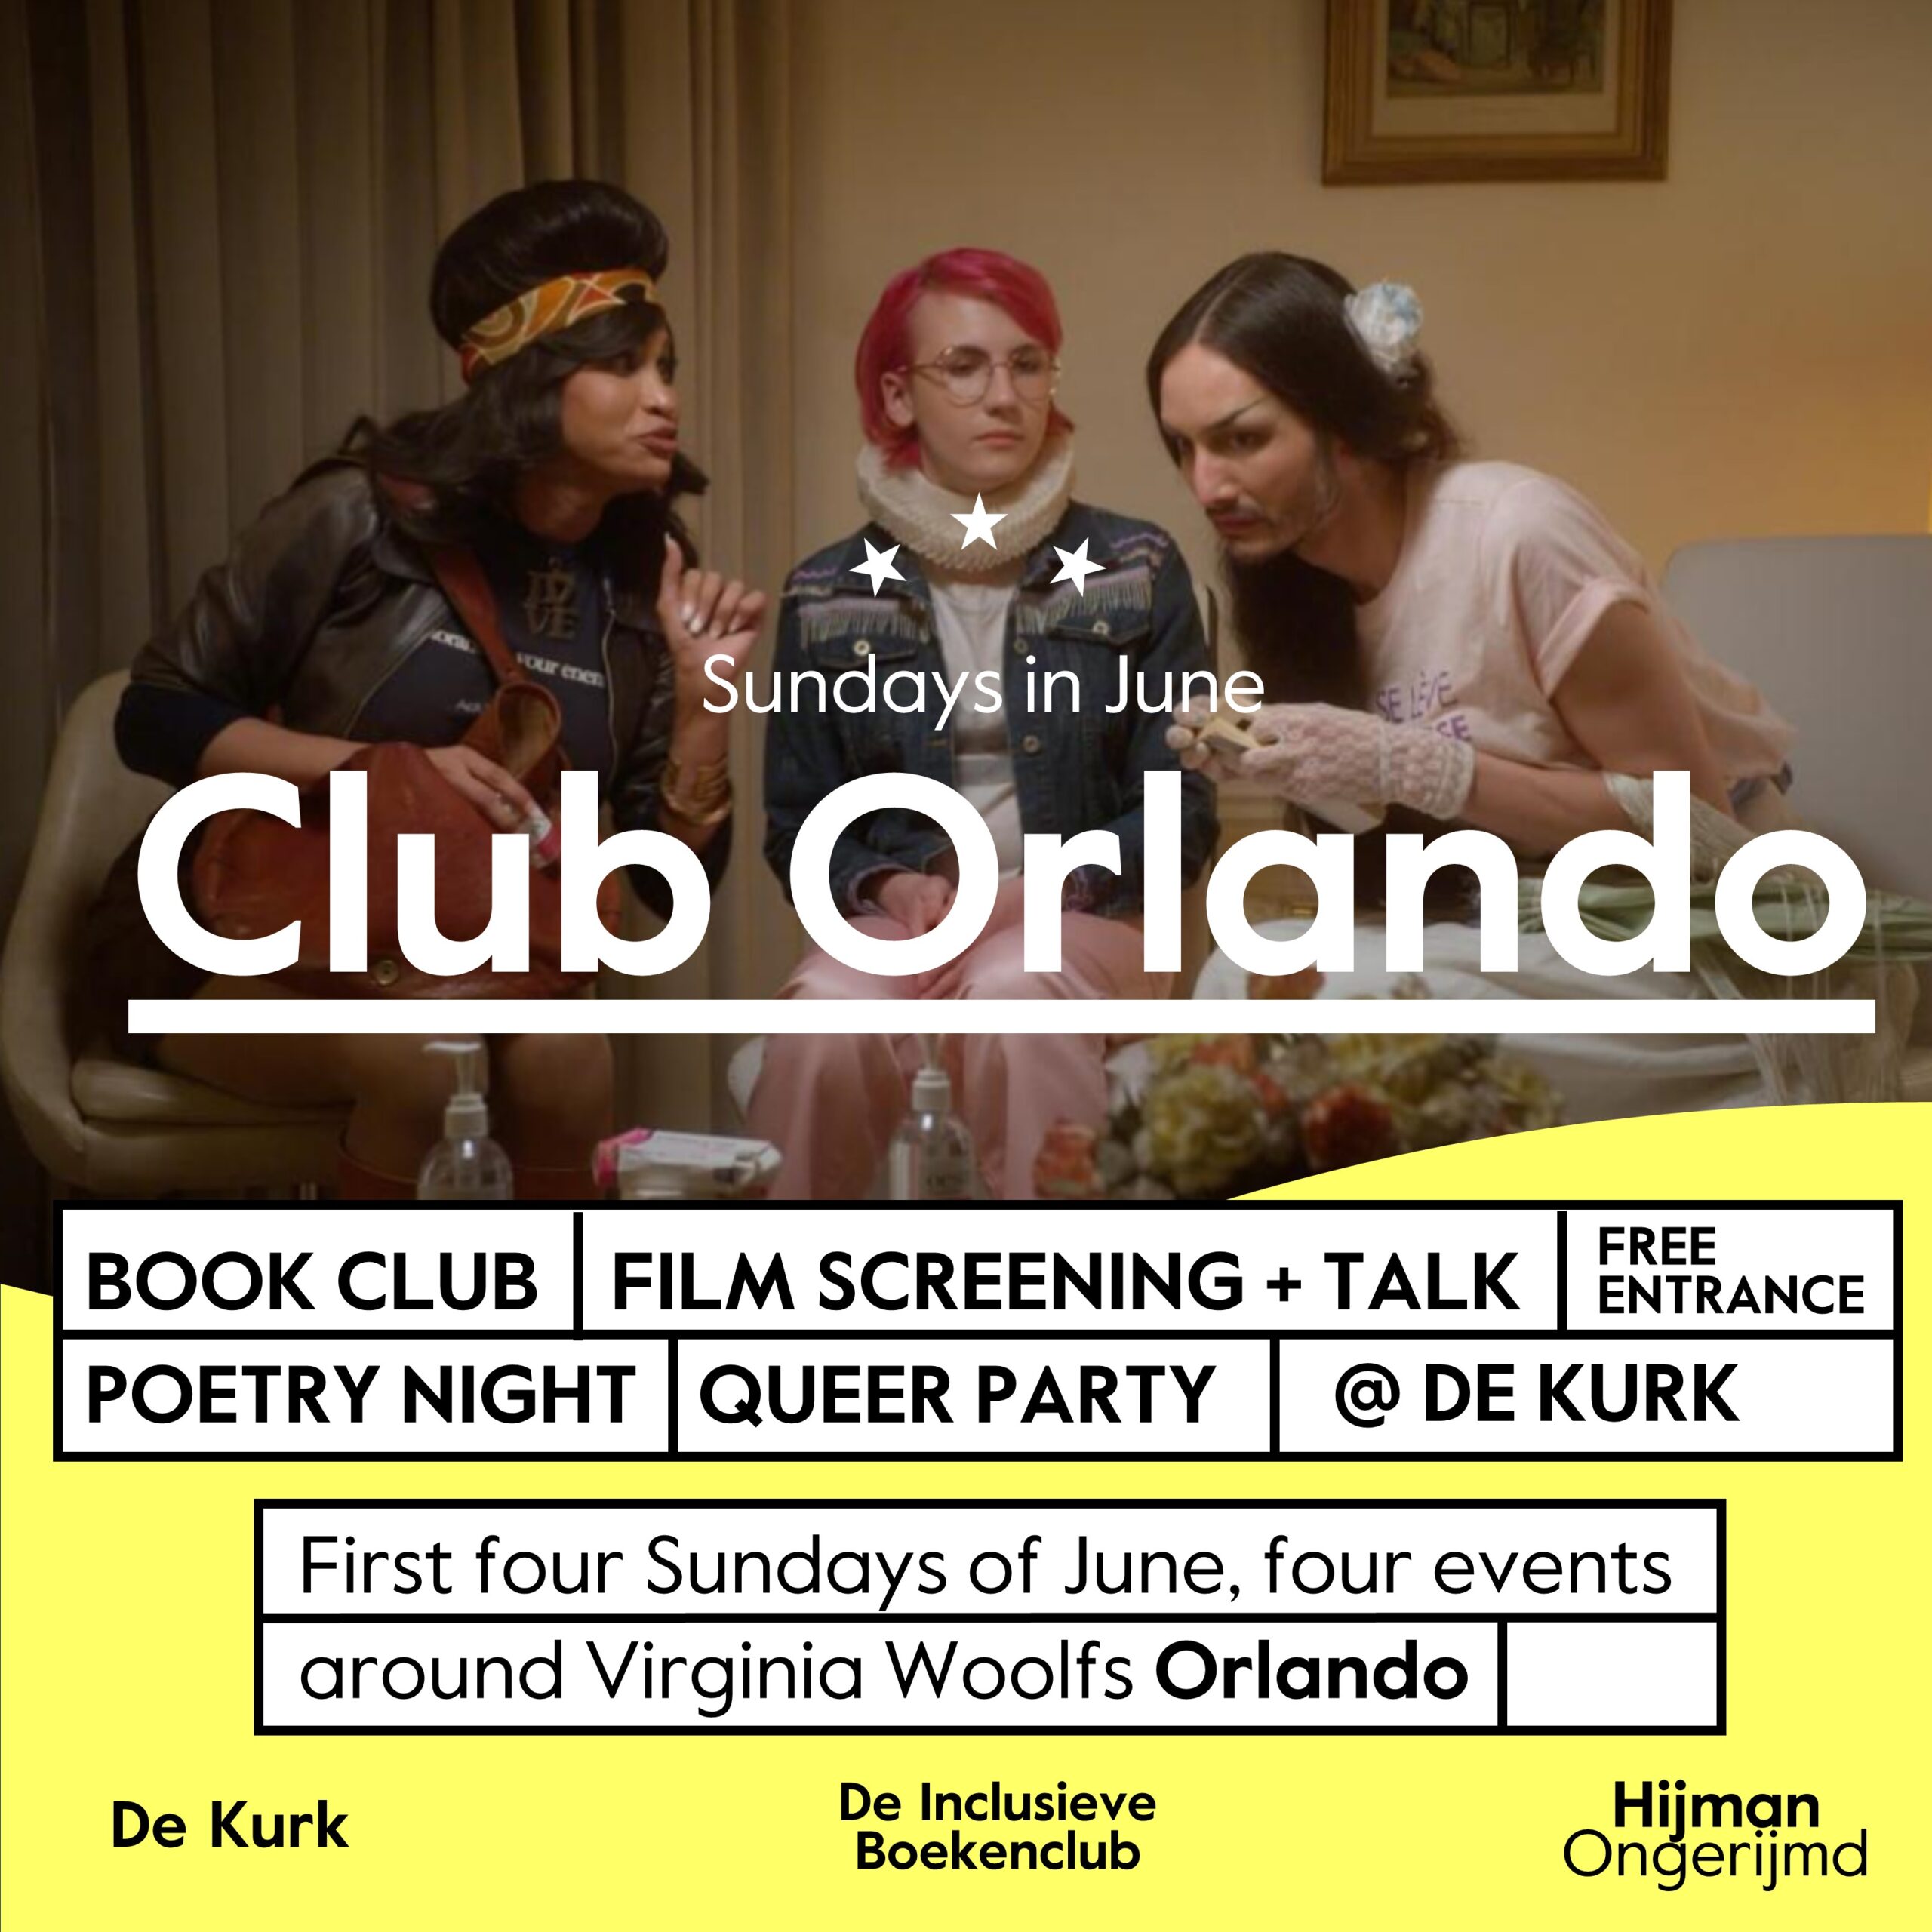 Club Orlando: Book Club